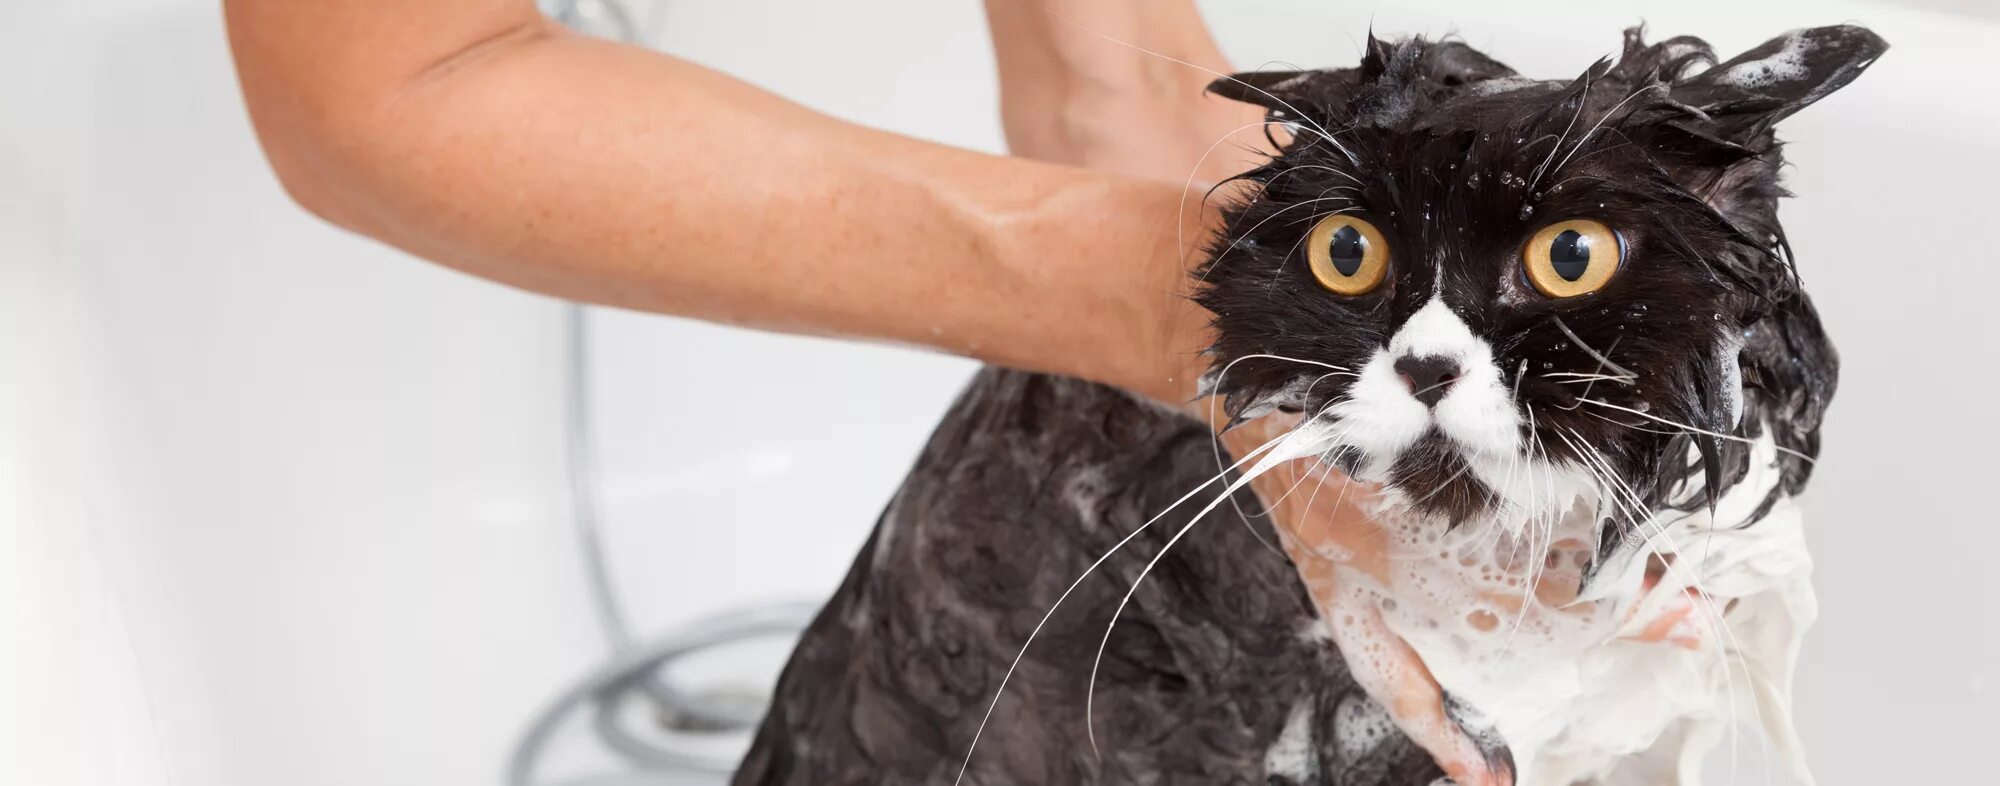 После мытья кошки. Кота моют. Помытый кот. Мытье кошки. Мокрый кот.